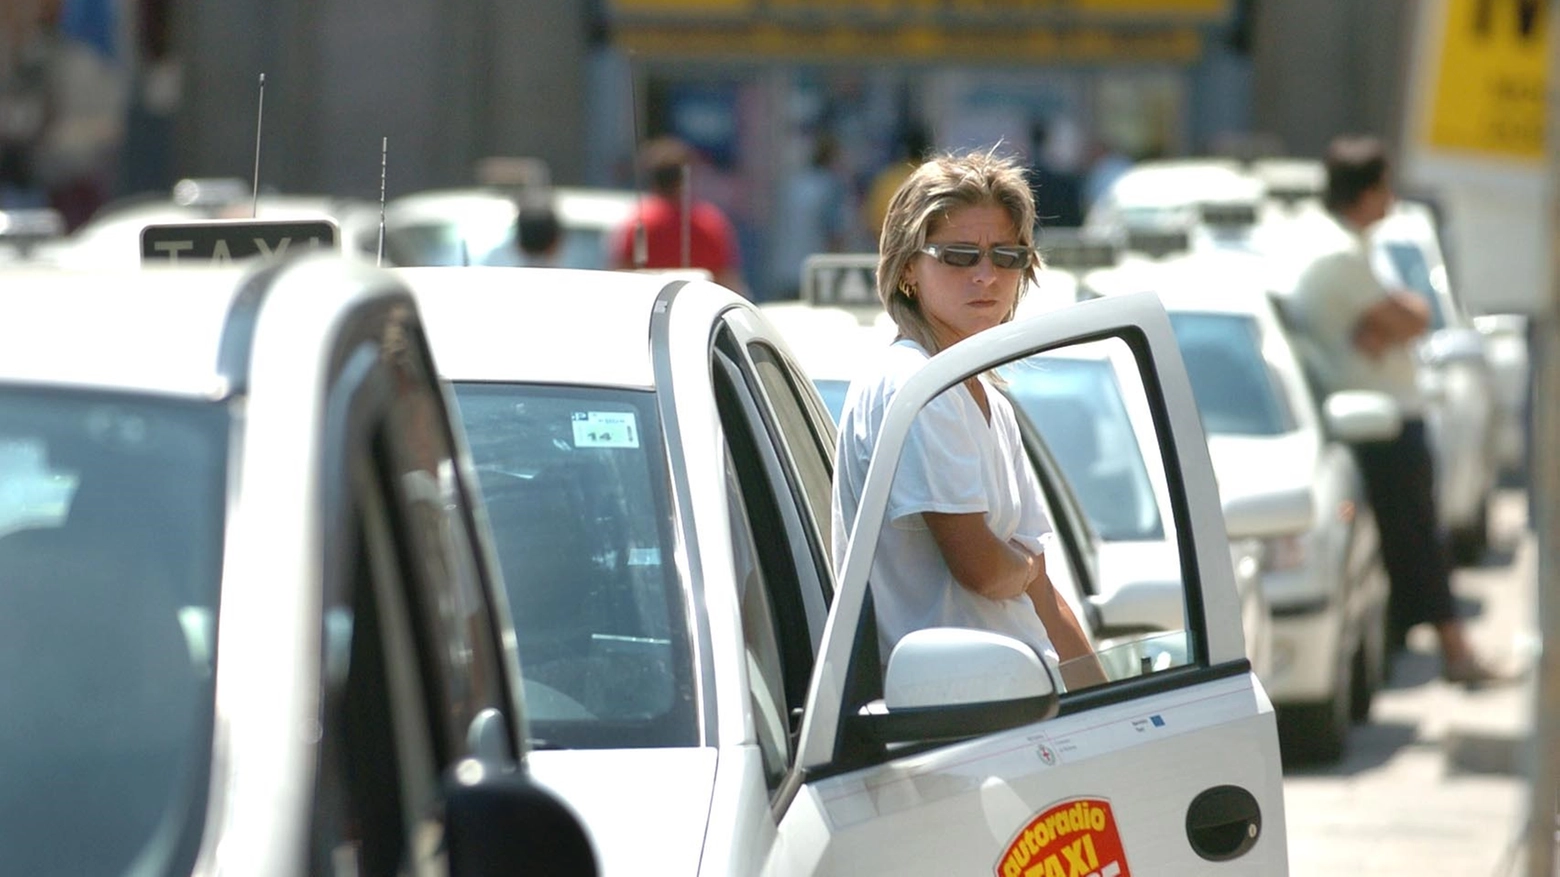 Il progetto "Milano taxi 2019" punta a colmare lo sbilanciamento tra domanda e offerta